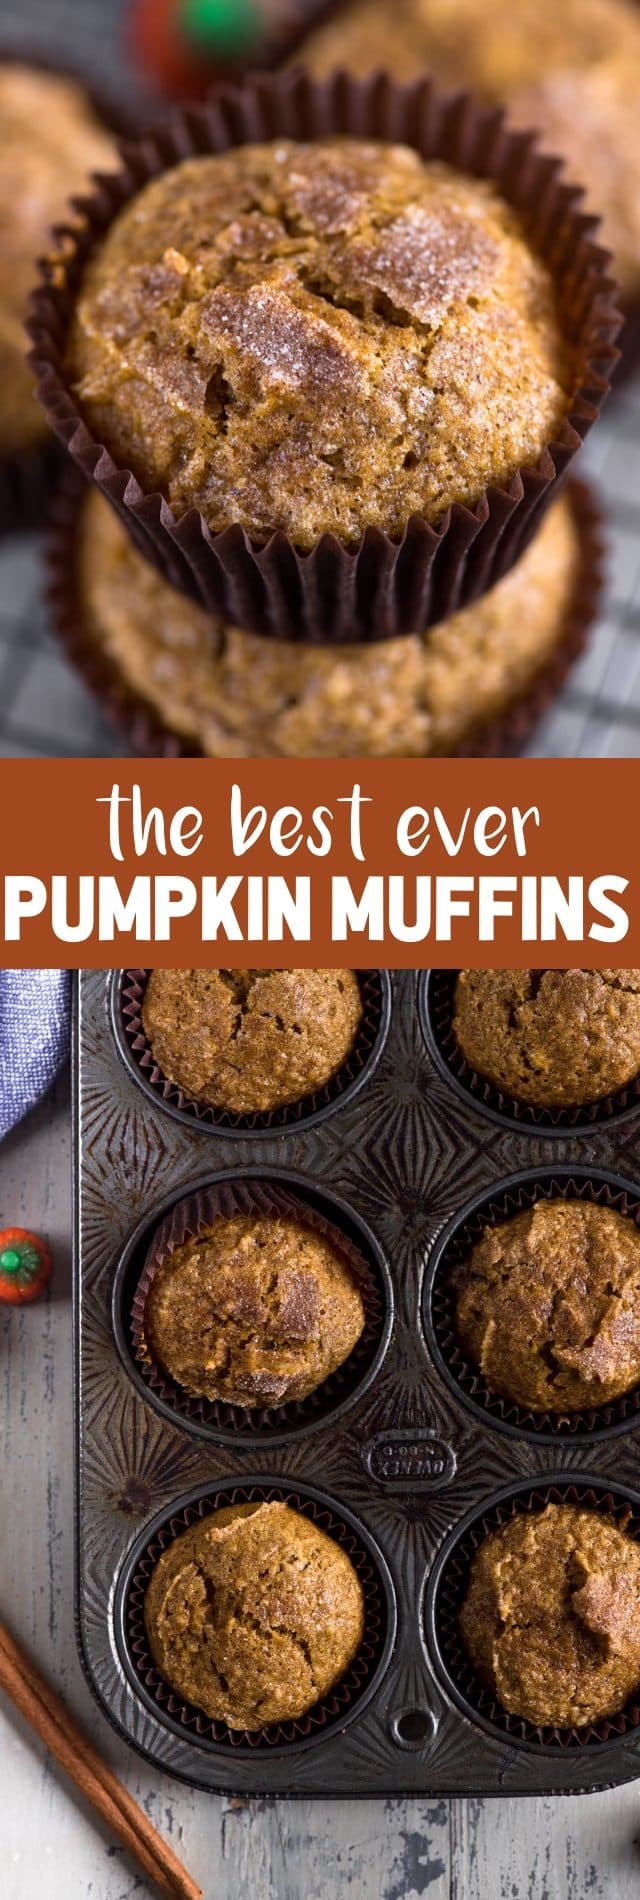 collage of pumpkin muffins photos